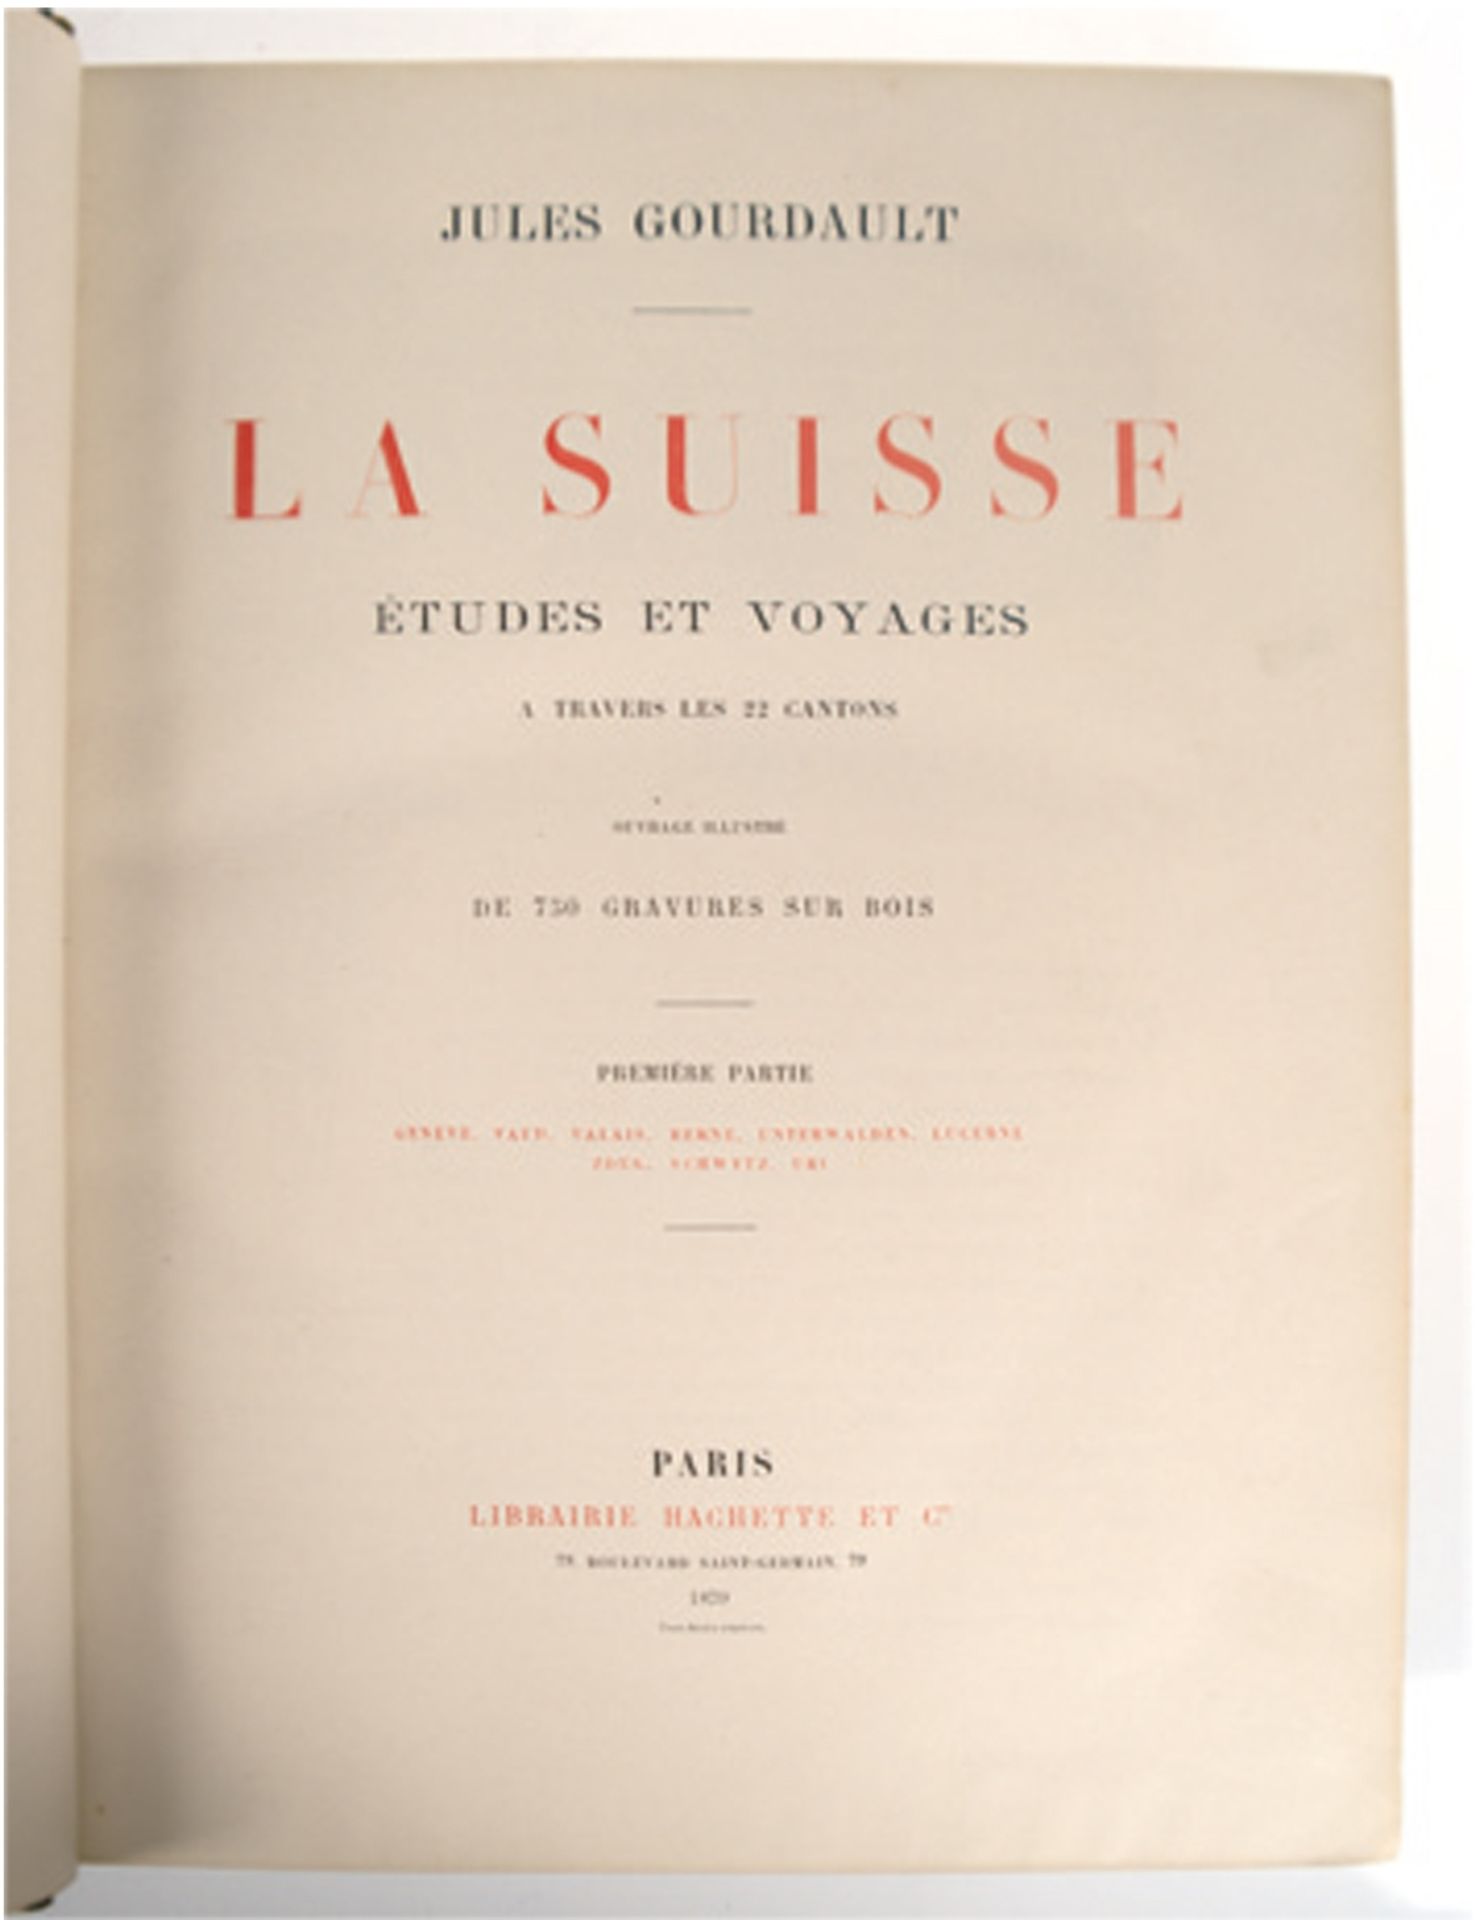 Buch "La Suisse, études et voyages" von Jules Gourdault, in französischer Schrift, dat. Paris 1879, - Image 2 of 2